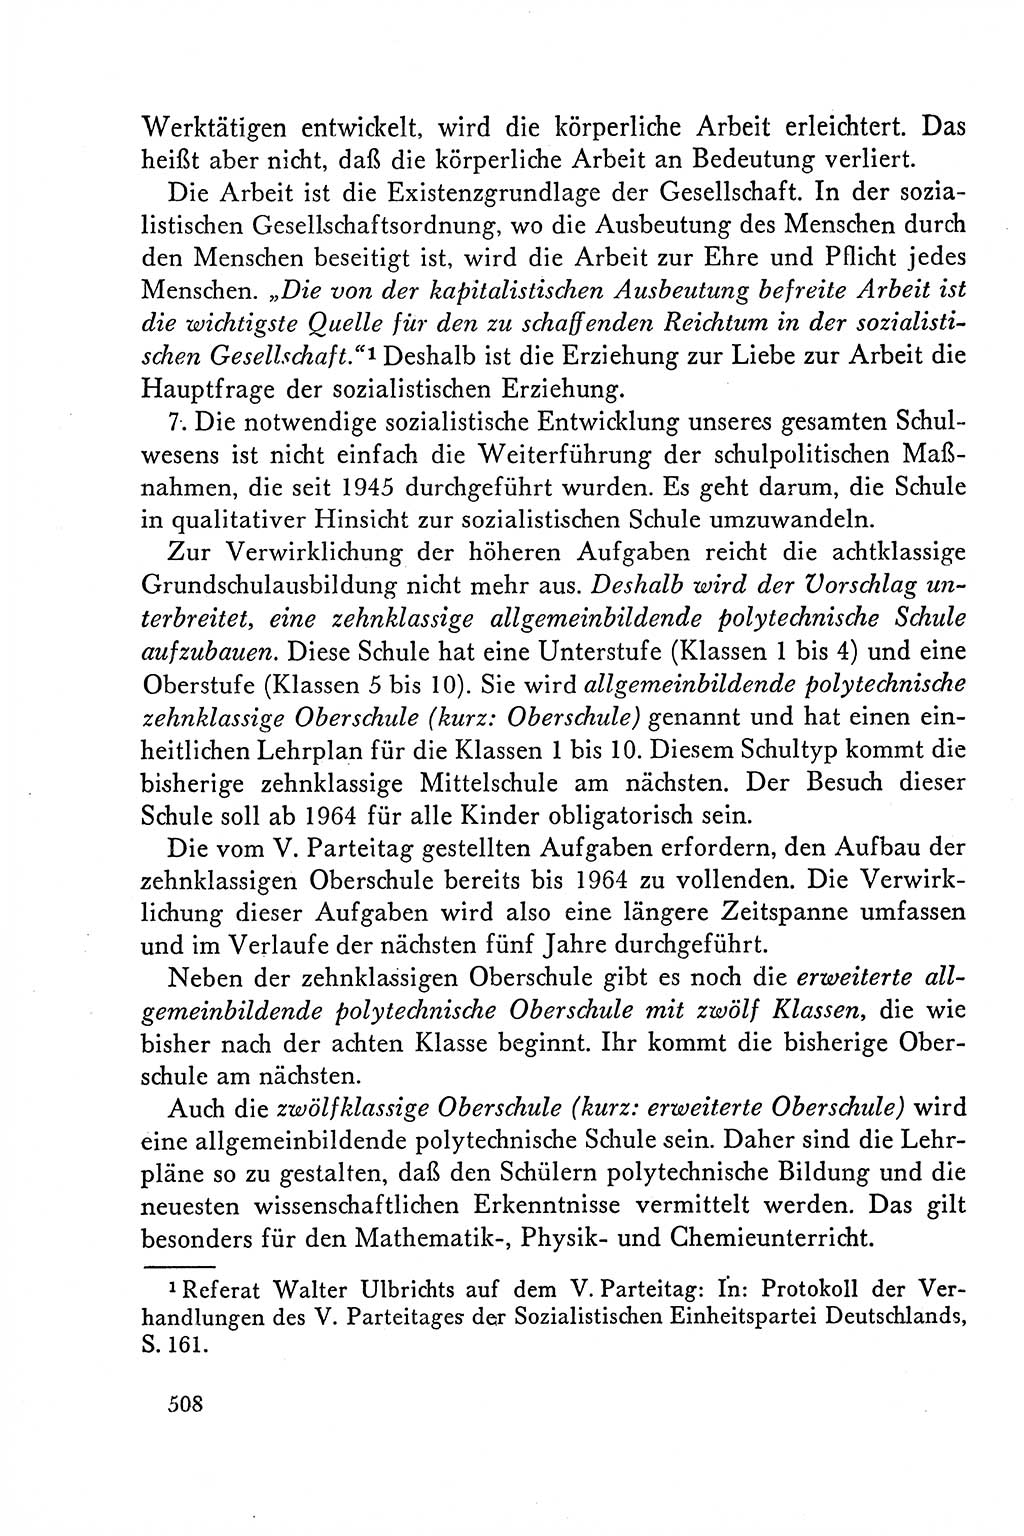 Dokumente der Sozialistischen Einheitspartei Deutschlands (SED) [Deutsche Demokratische Republik (DDR)] 1958-1959, Seite 508 (Dok. SED DDR 1958-1959, S. 508)